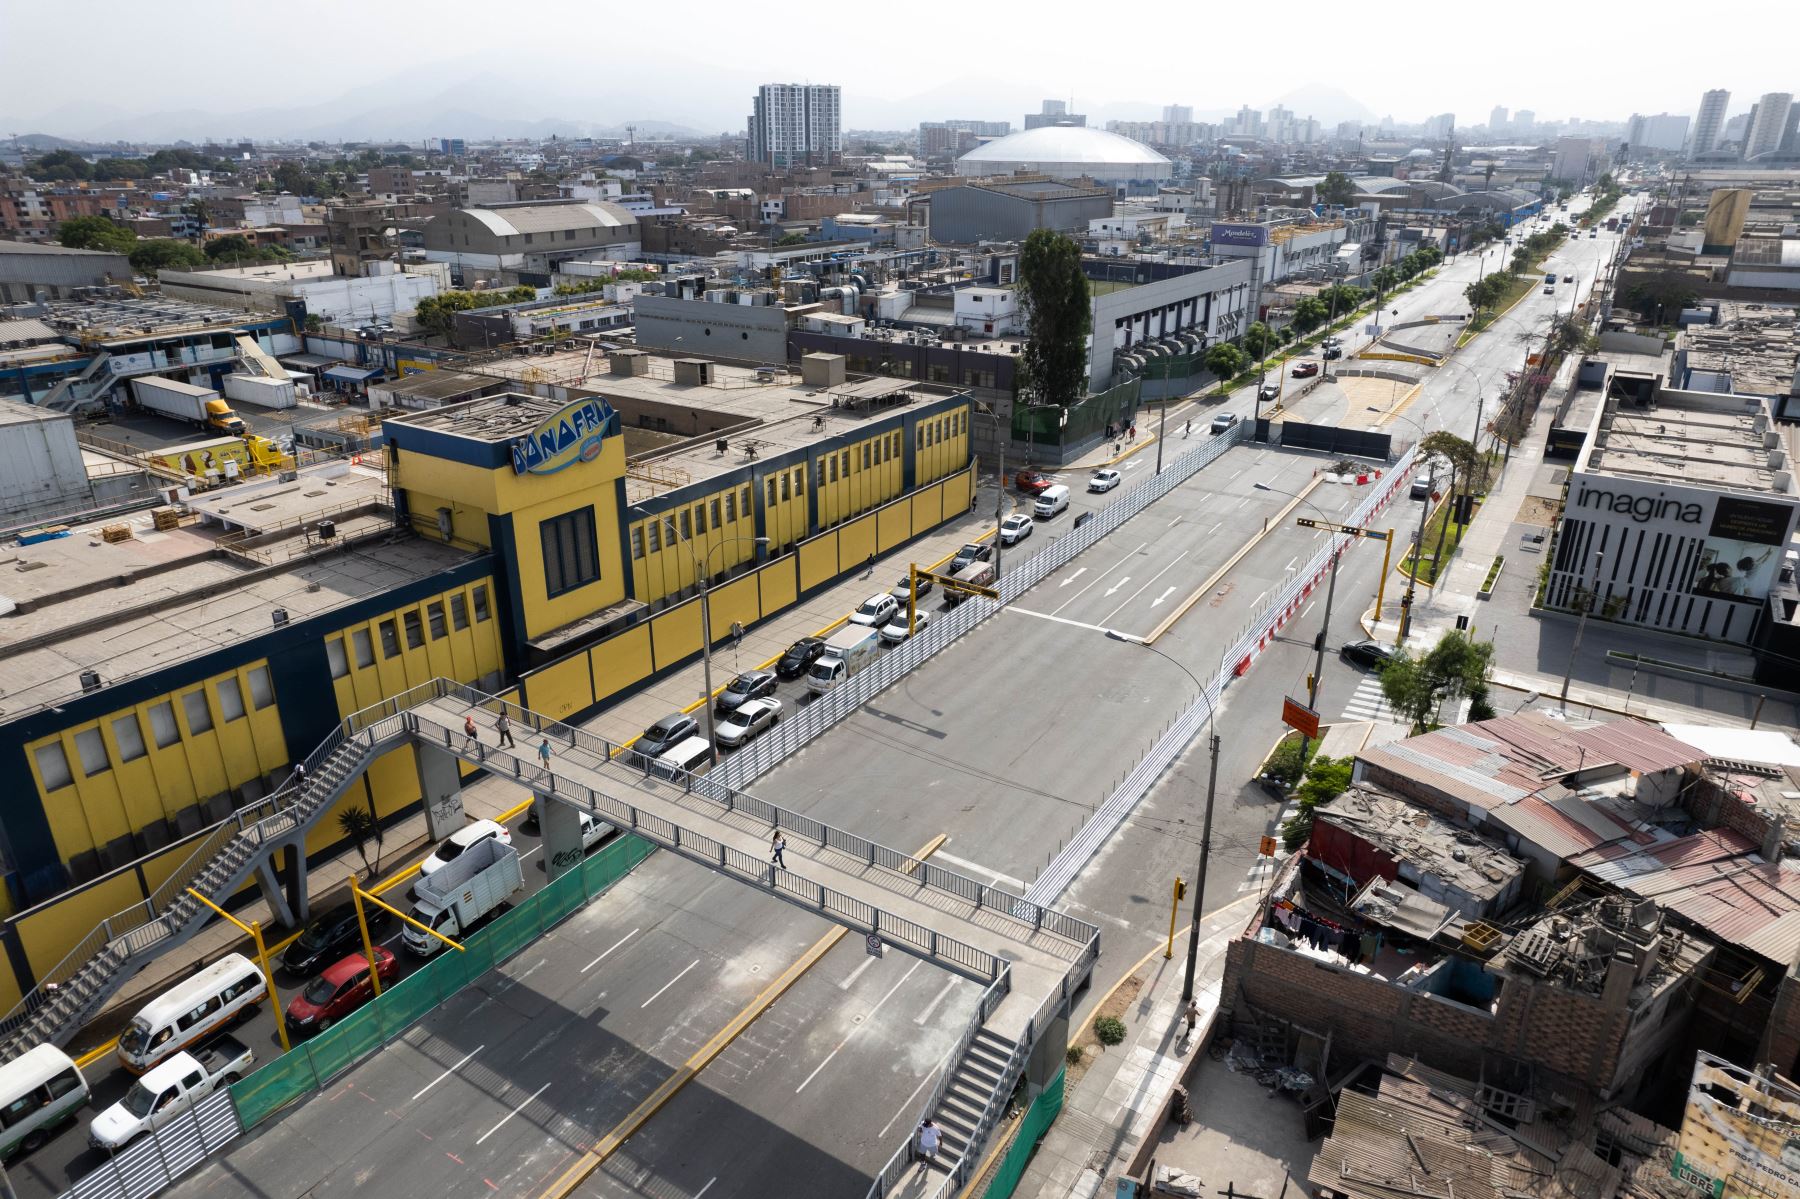 Inició el plan de desvíos de vehículos de transporte público y privado en la Av. Venezuela, debido a las obras de construcción de estaciones de la Línea 2 del Metro de Lima. Foto: ANDINA/Daniel Bracamonte